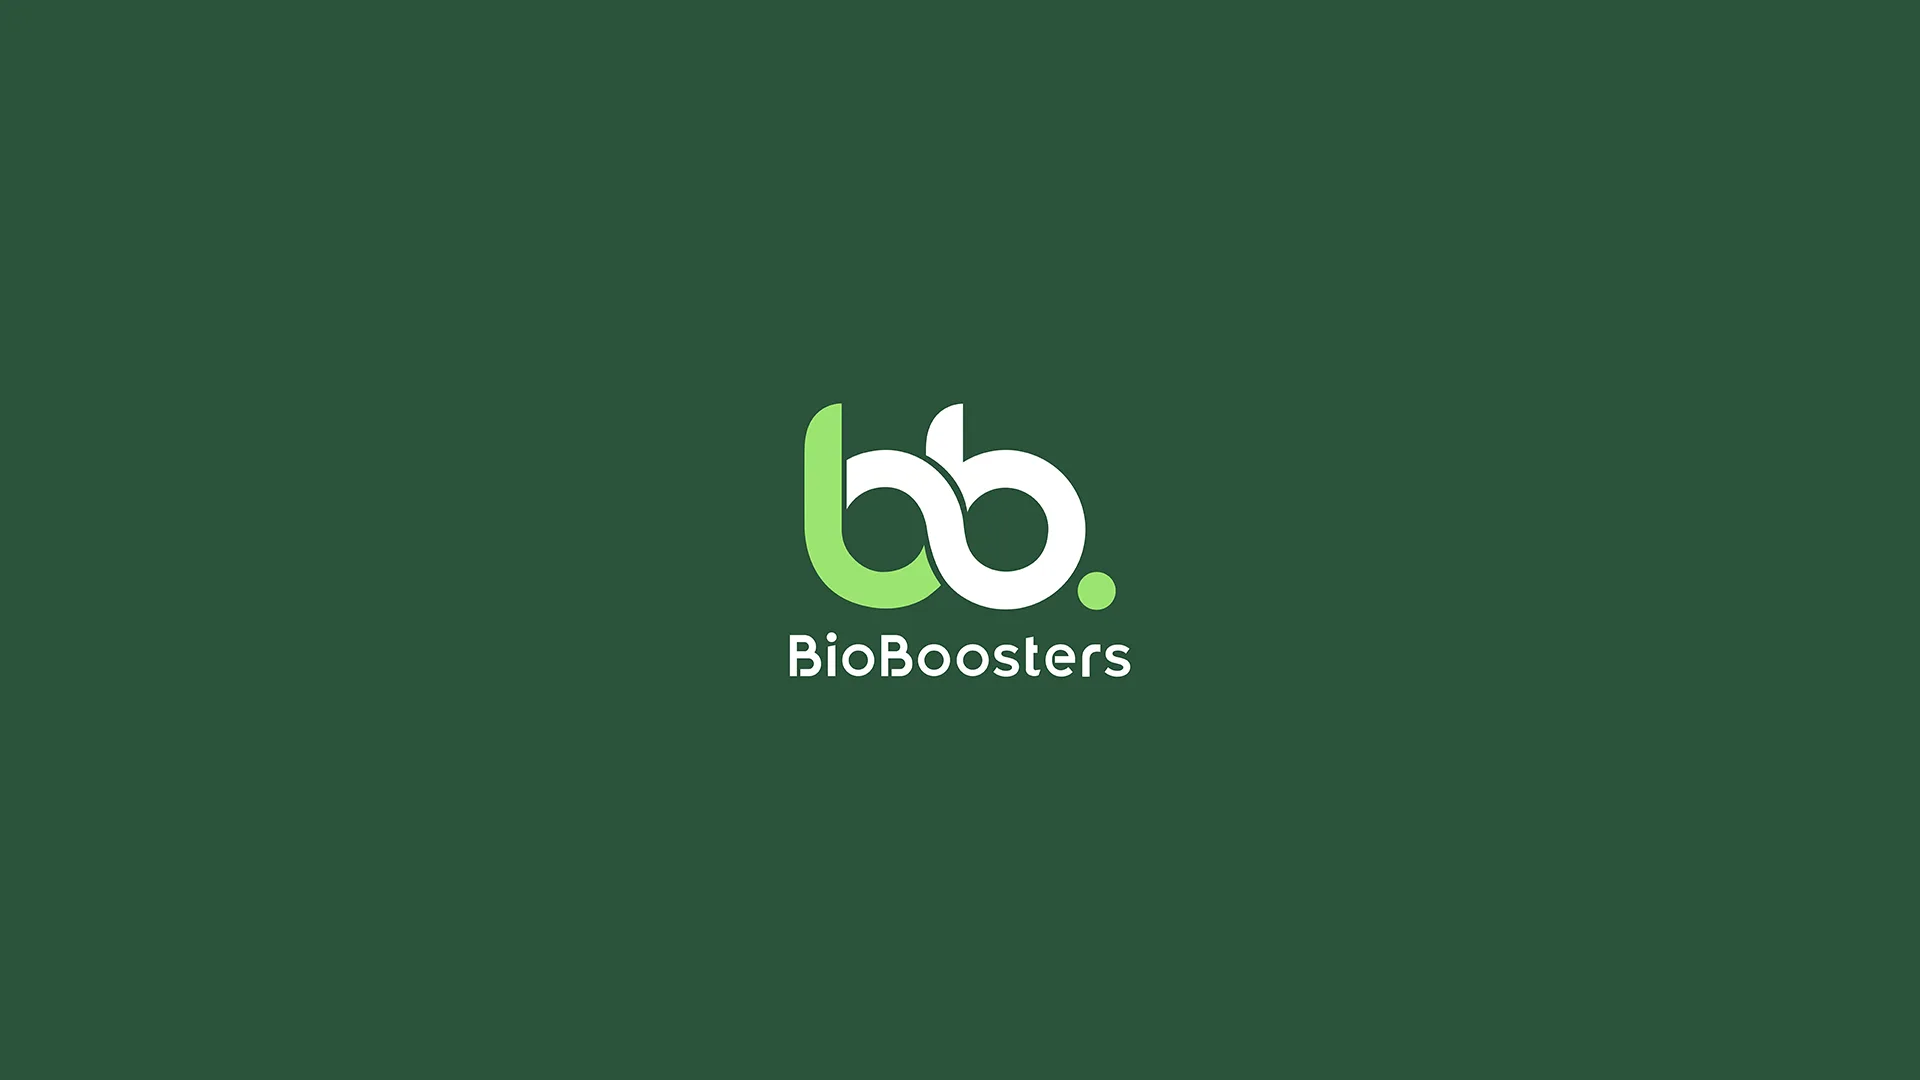 En casebild för projektet BioBoosters av reklambyrån Gullström & CO i Karlstad.